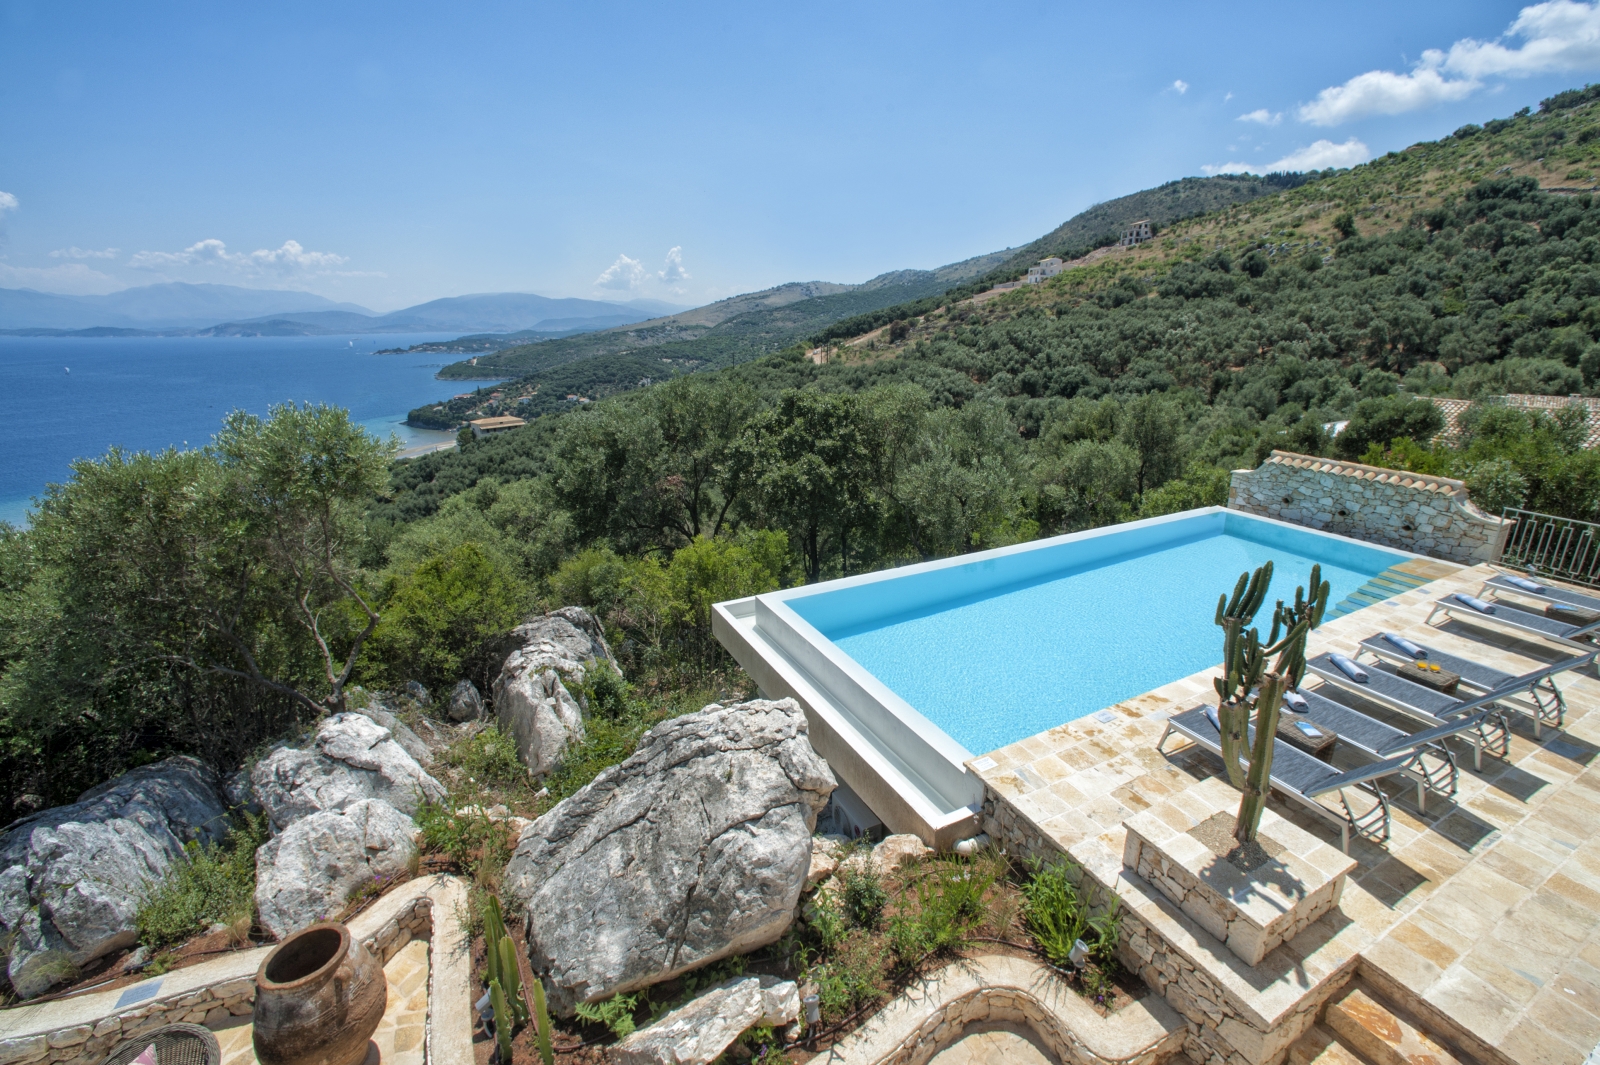 View of pool and sea view at Villa Dionysos, Corfu